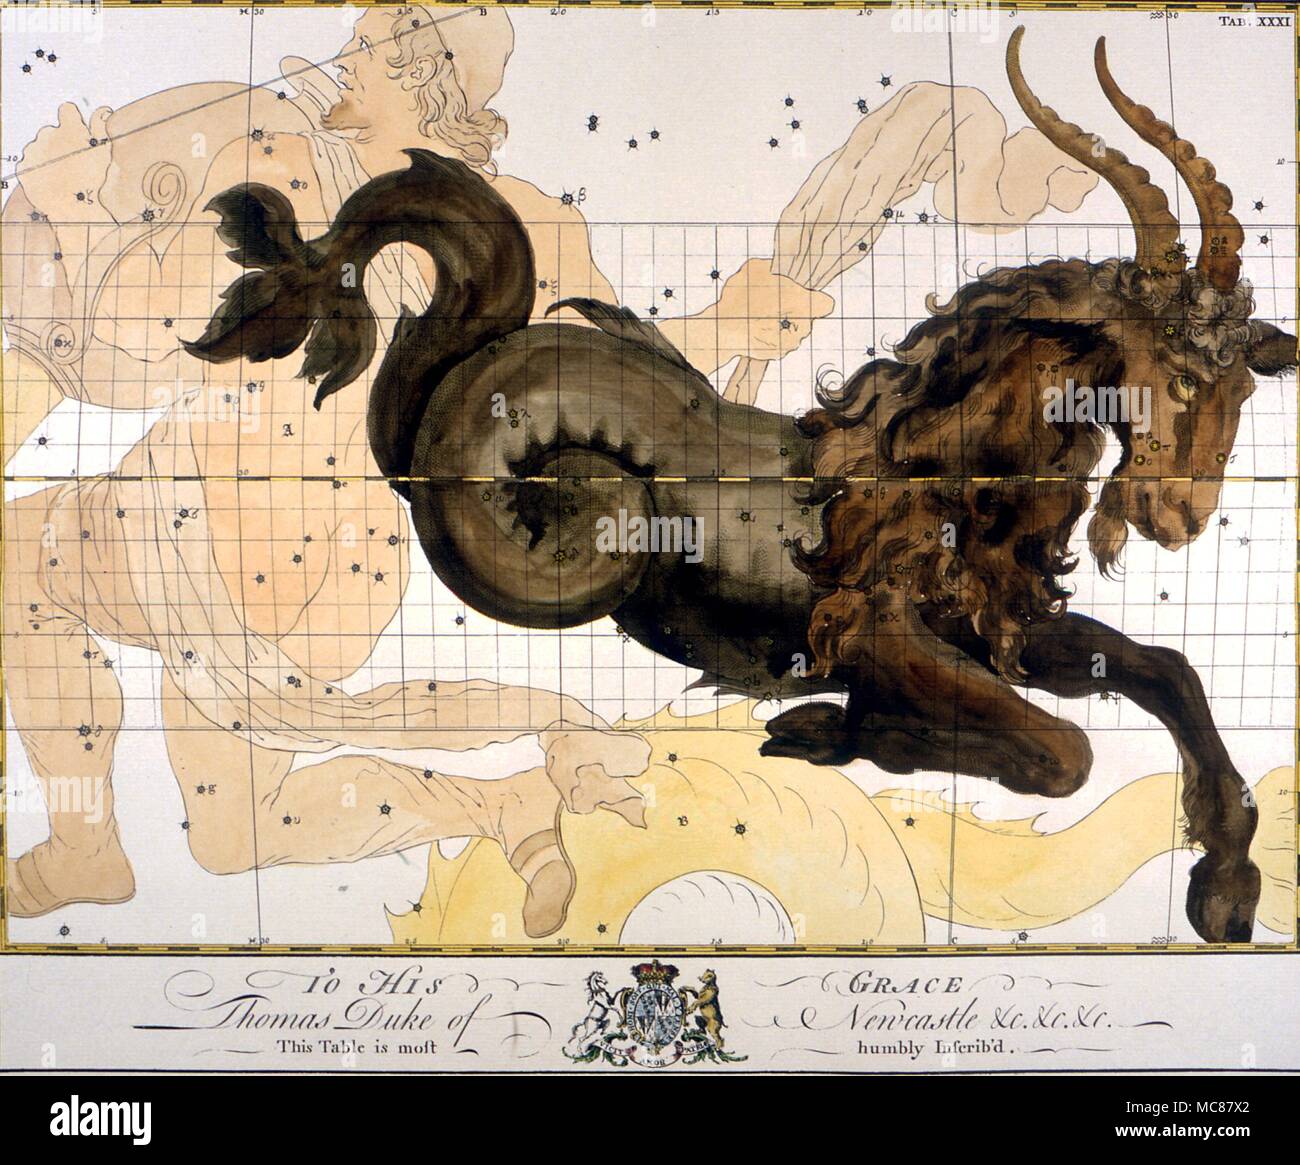 Sternbilder und Sterne Karten Steinbock ein loses Ende des 18. Jahrhunderts Platte von einem englischen Abonnement Buch der Konstellation Charts Stockfoto